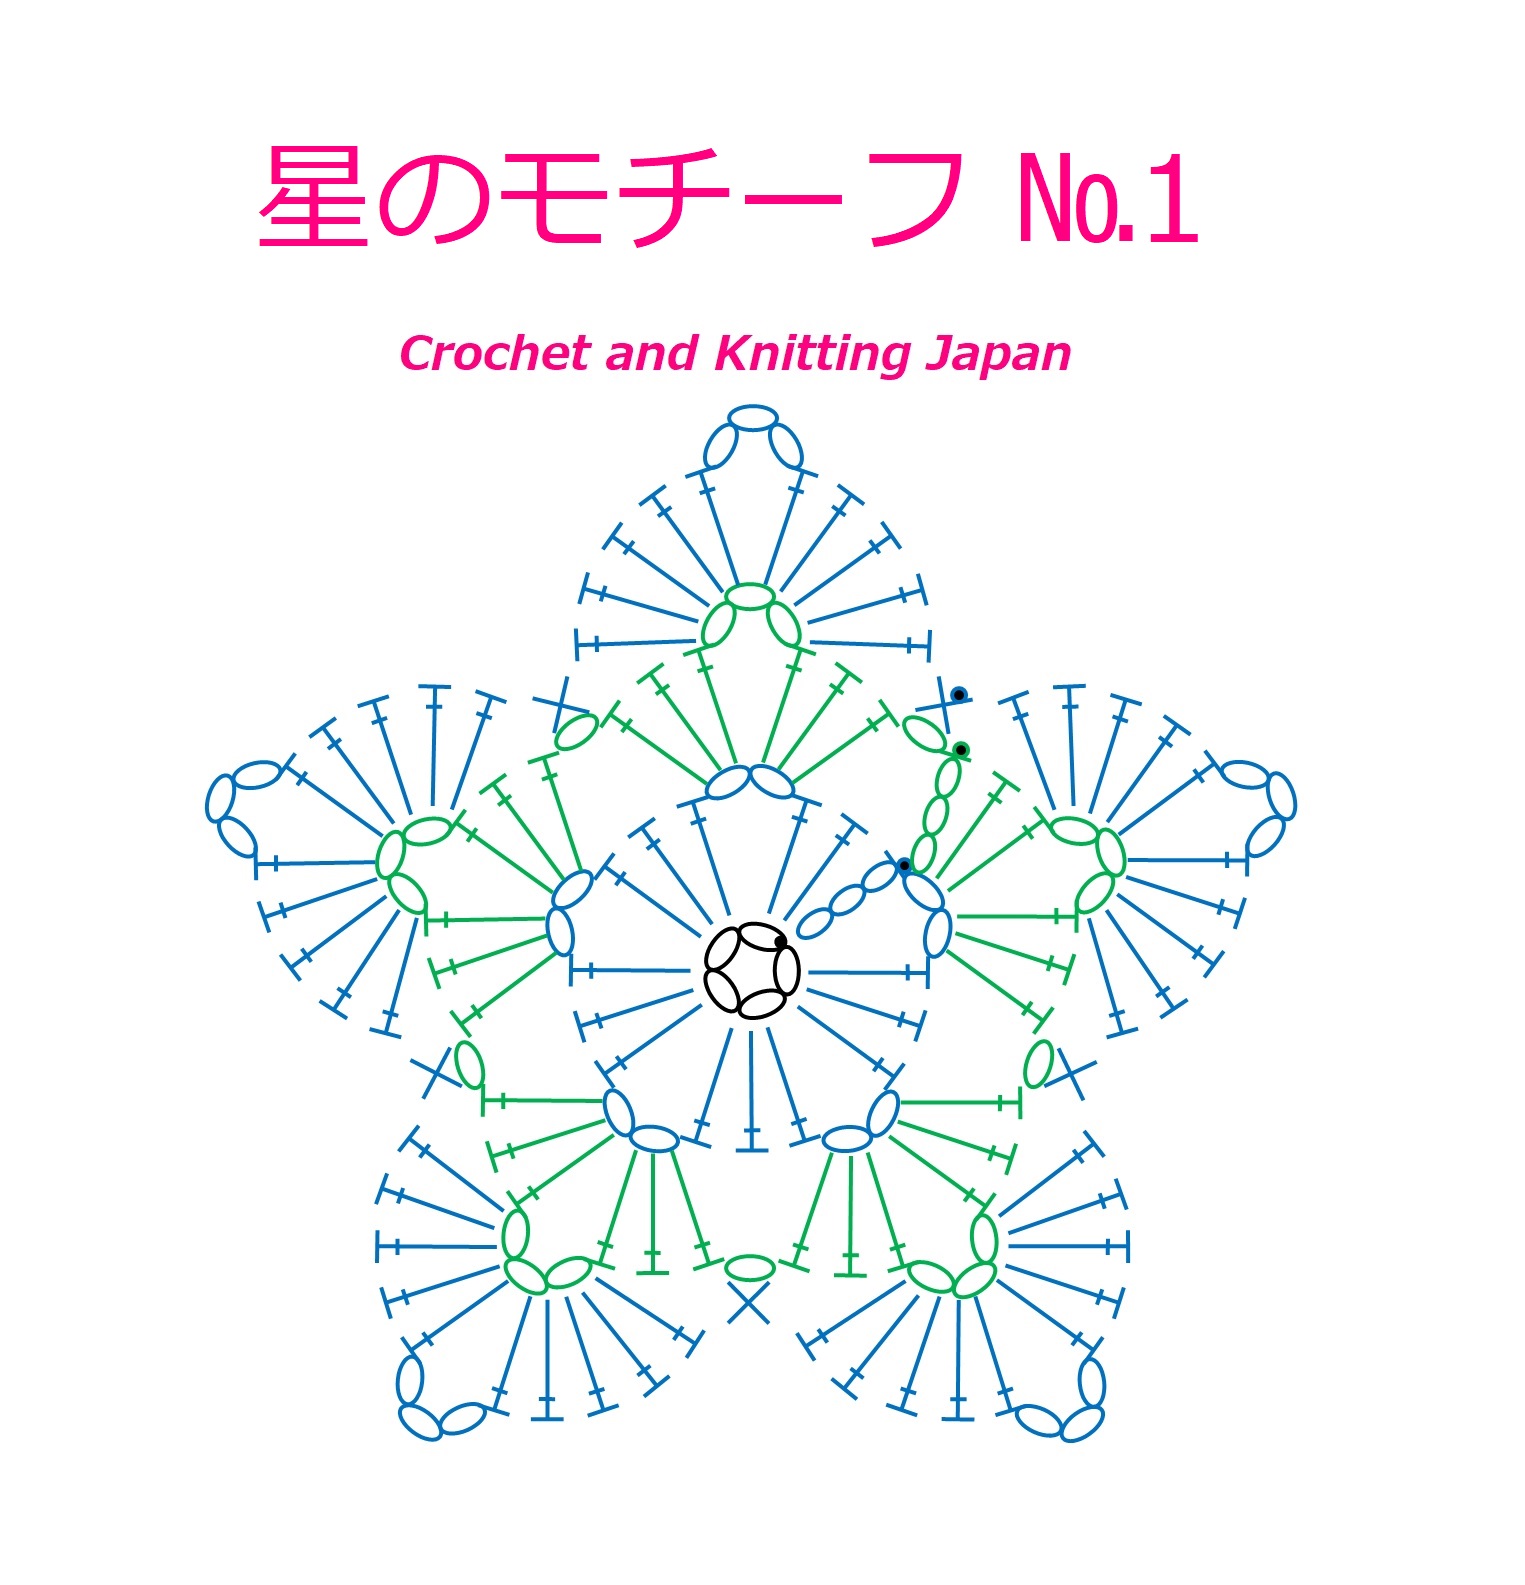 かぎ編み Crochet Japan クロッシェジャパン かぎ針編み 星のモチーフ 1 の編み方 Crochet Star Motif Crochet And Knitting Japan